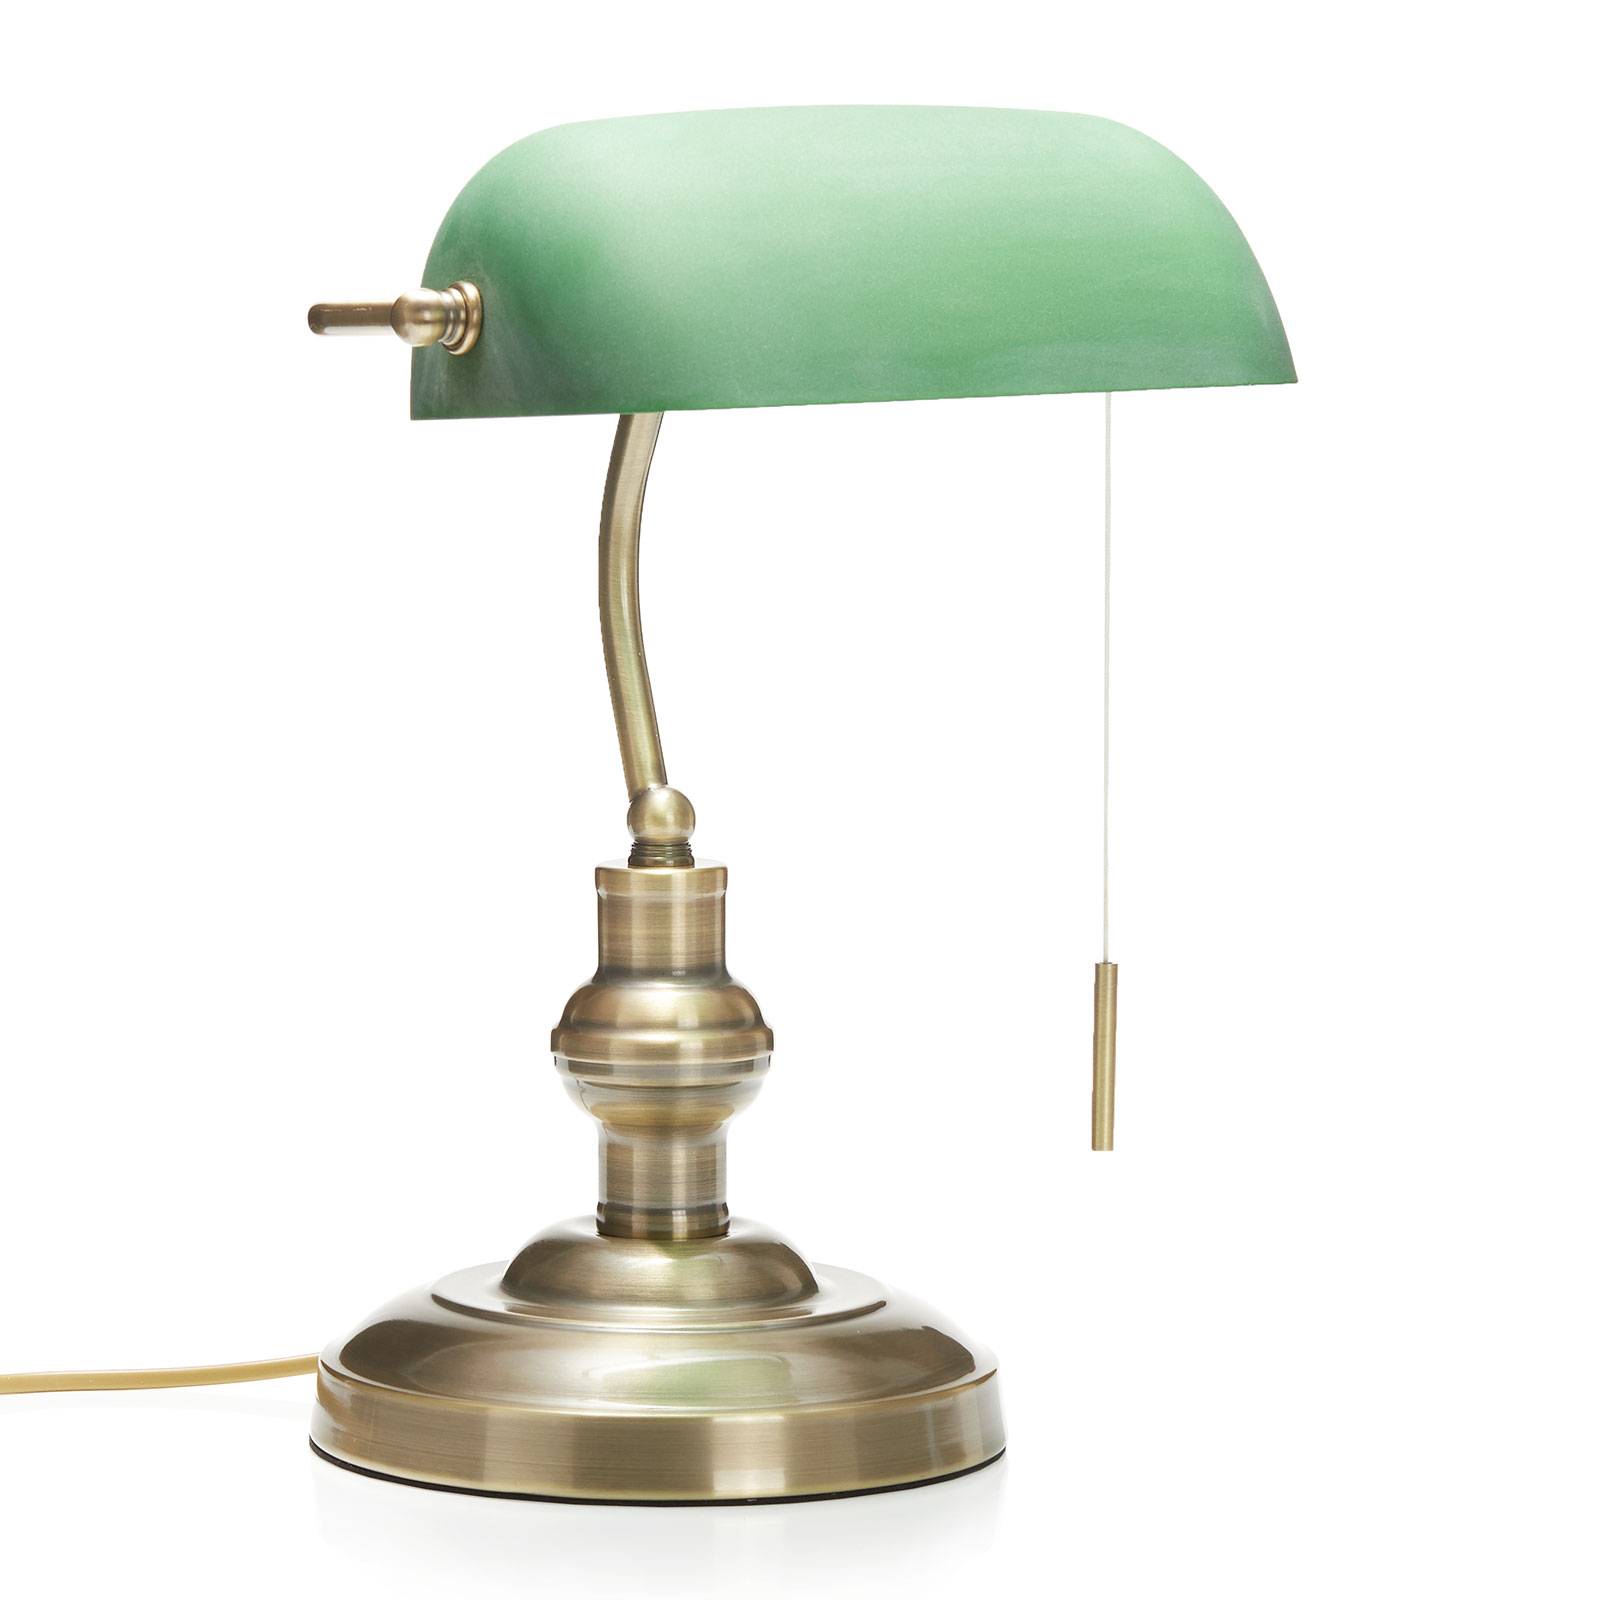 LINDBY Milenka - Schreibtischlampe mit grünem Schirm